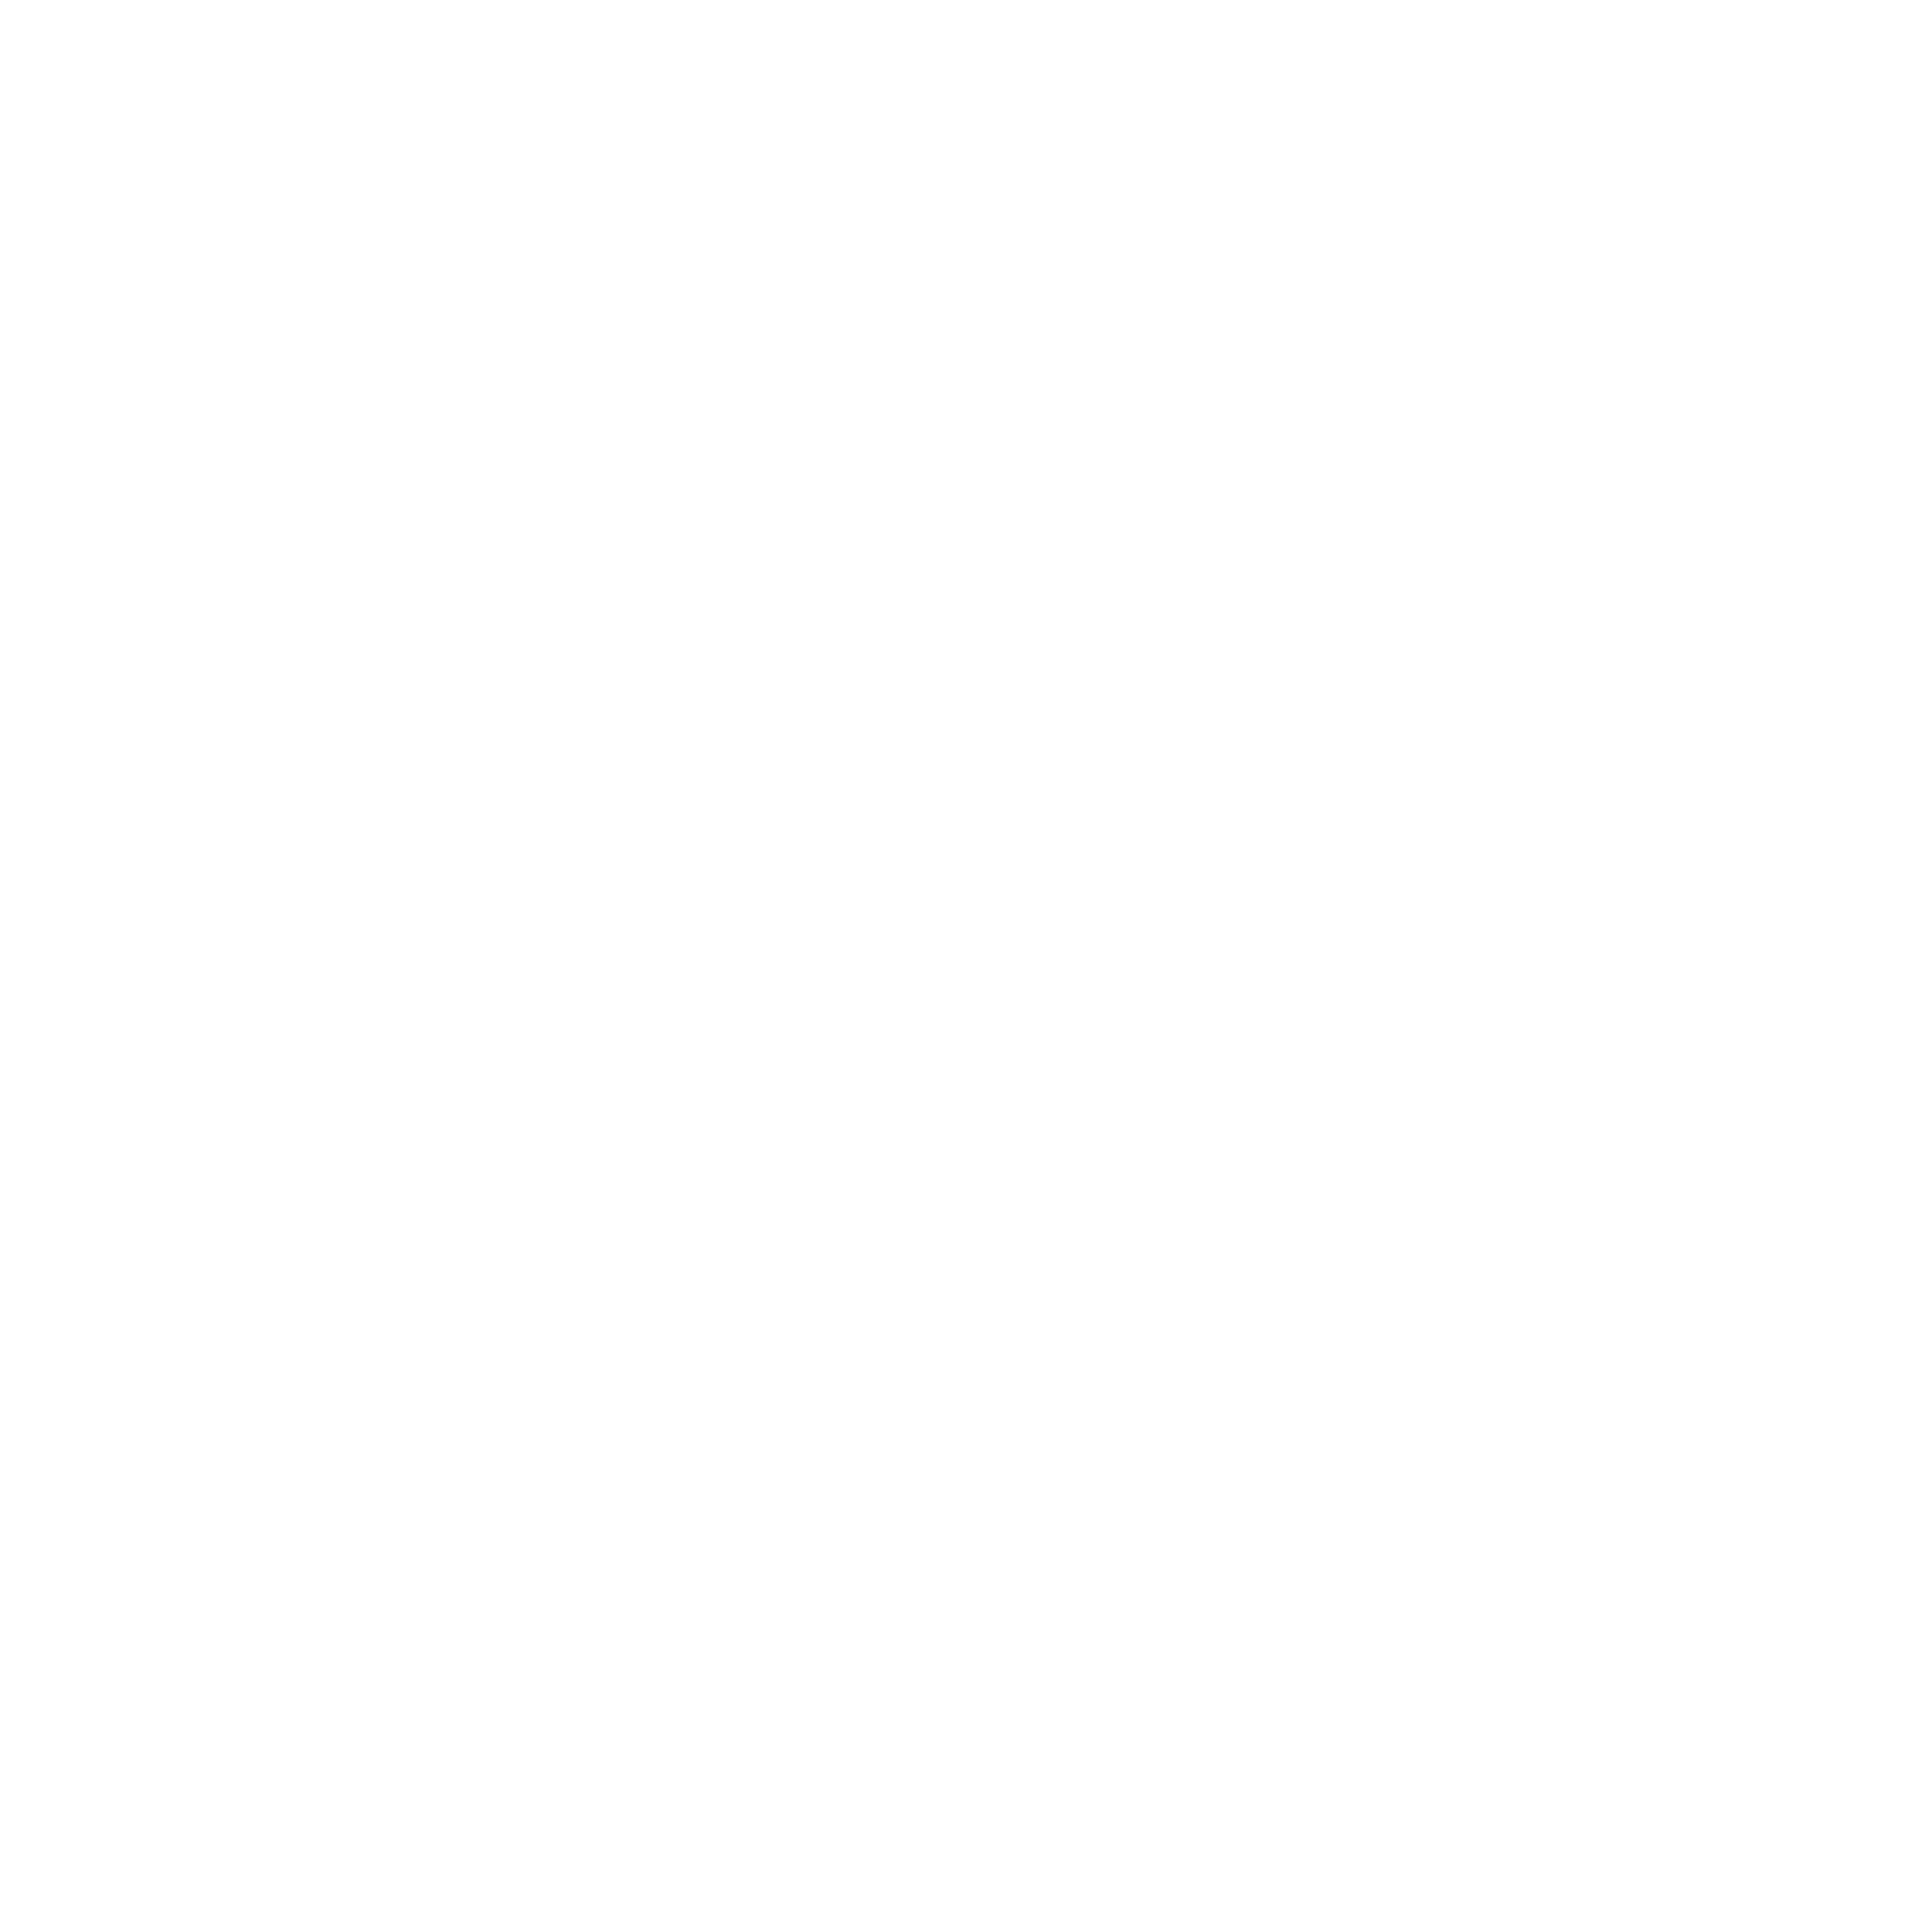 India Logo Transparent Picture